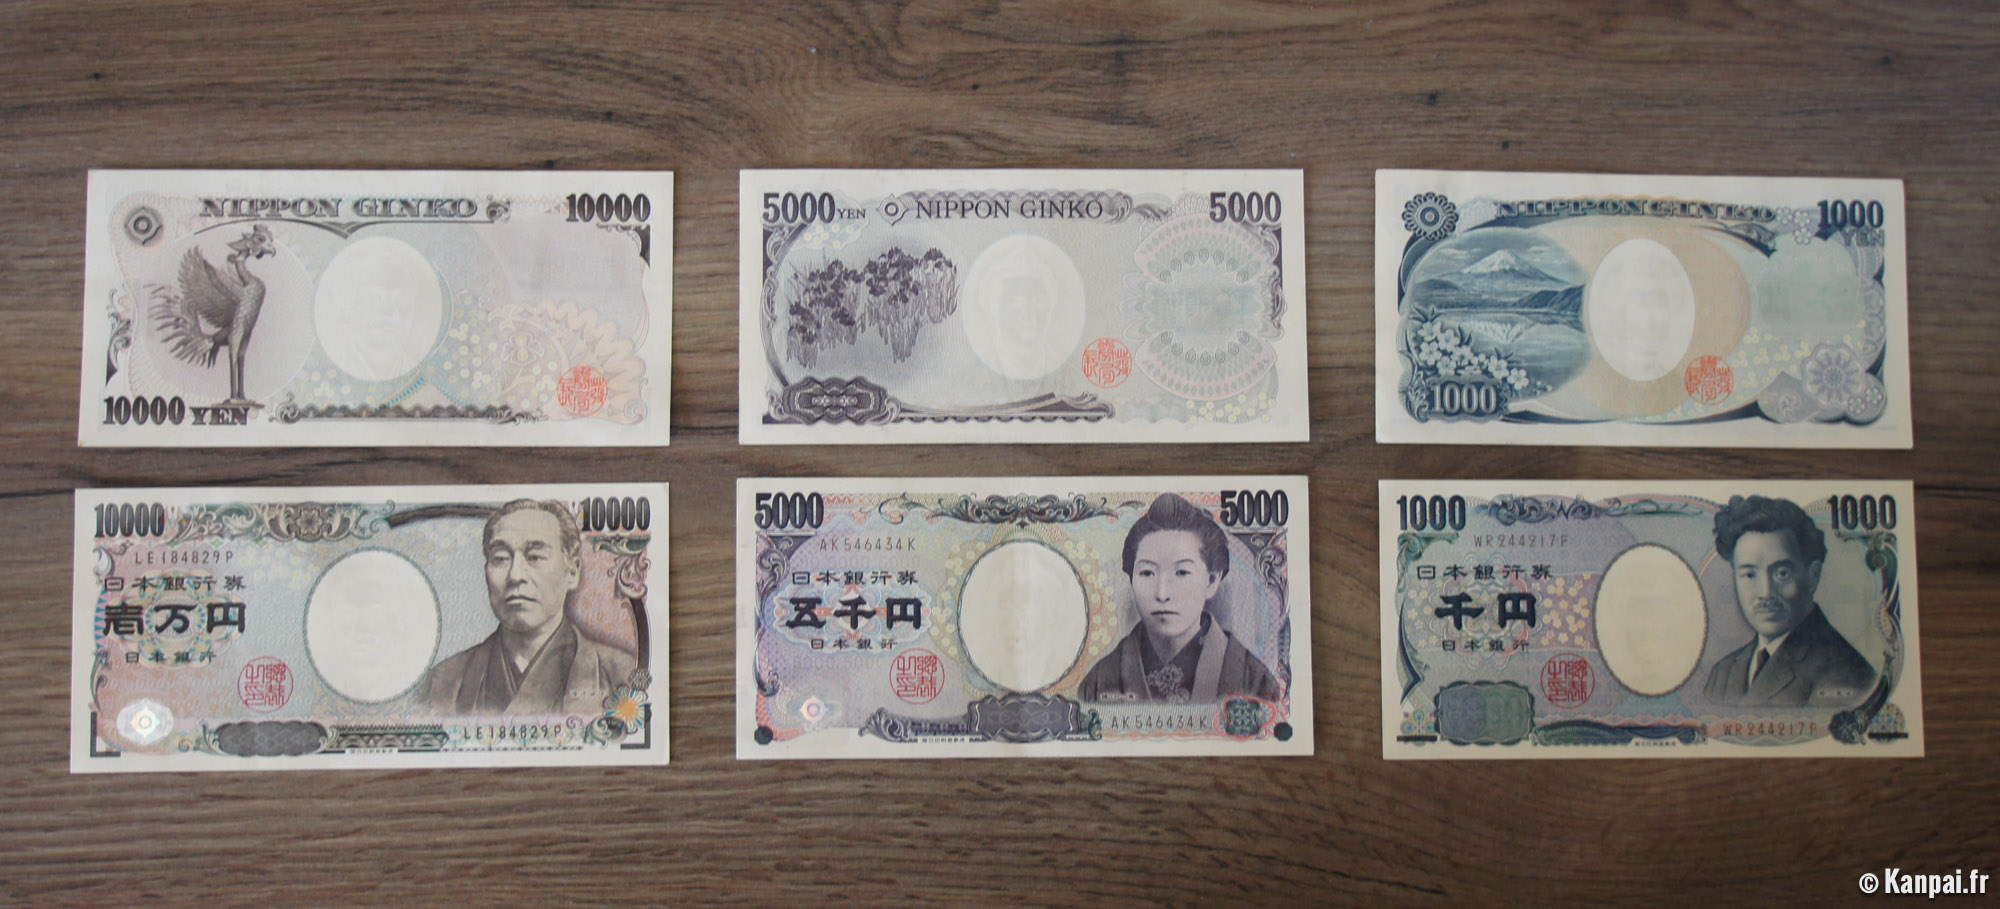  Yen  la  monnaie  japonaise 